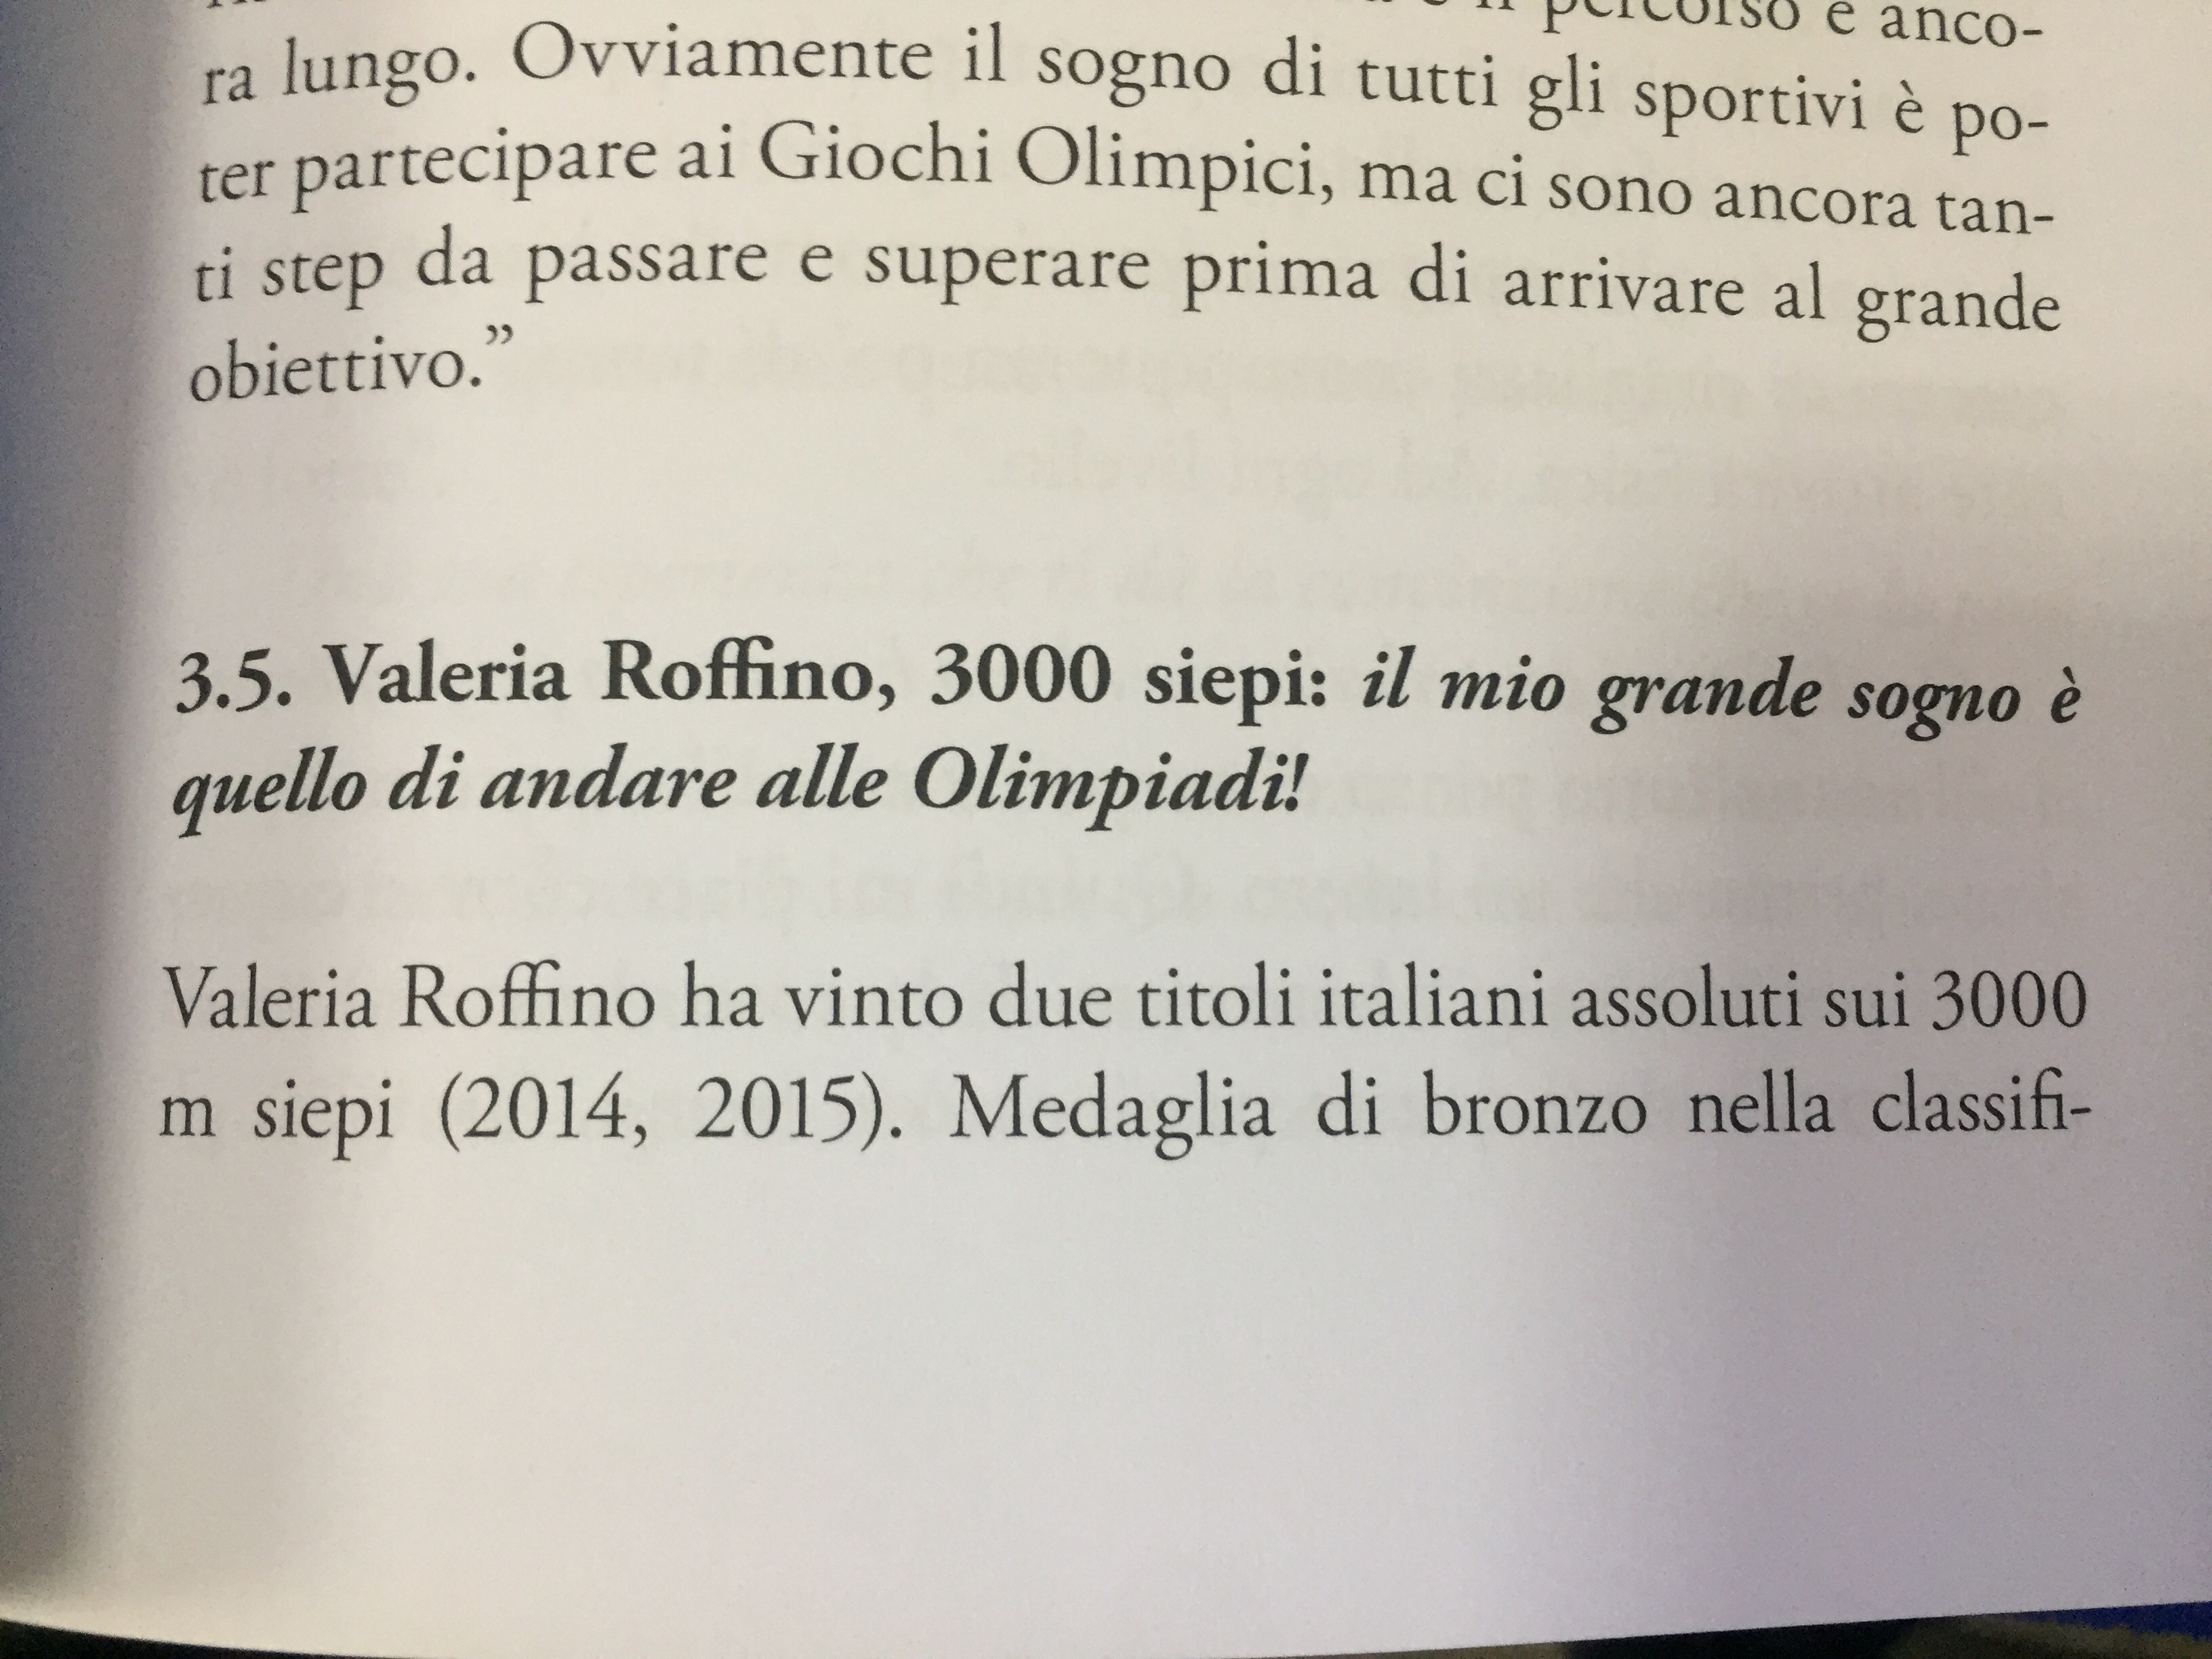 Foto 2 - Valeria Roffino, 3000 siepi: Il mio grande sogno è quello di andare alle Olimpiadi! 